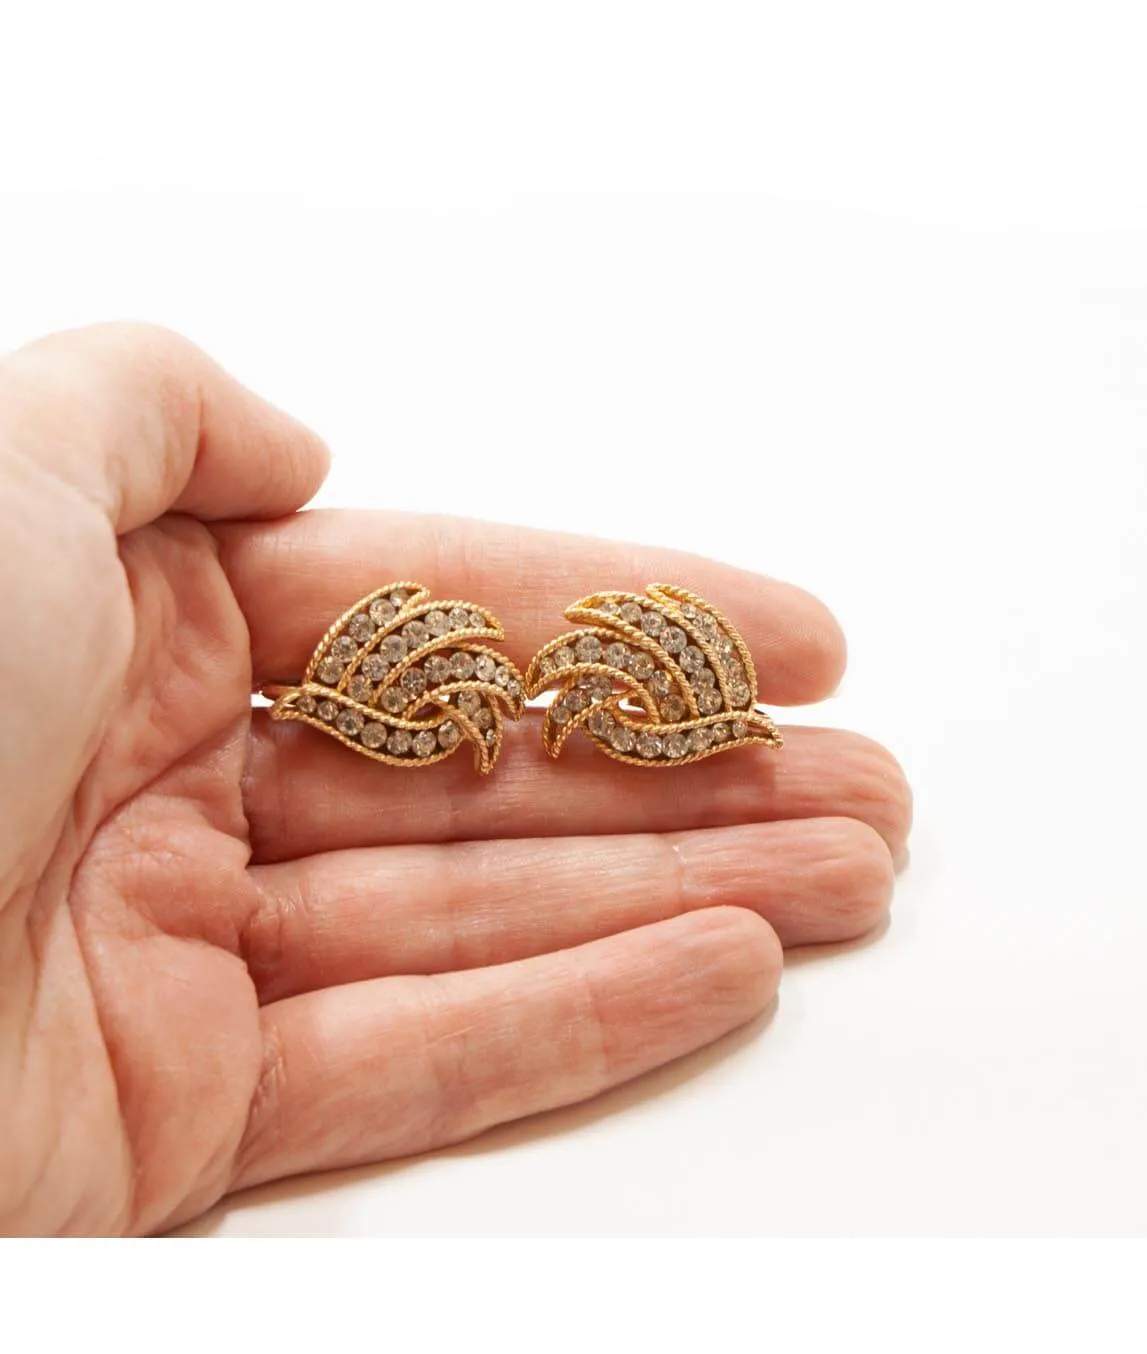 Crown Trifari earrings held in